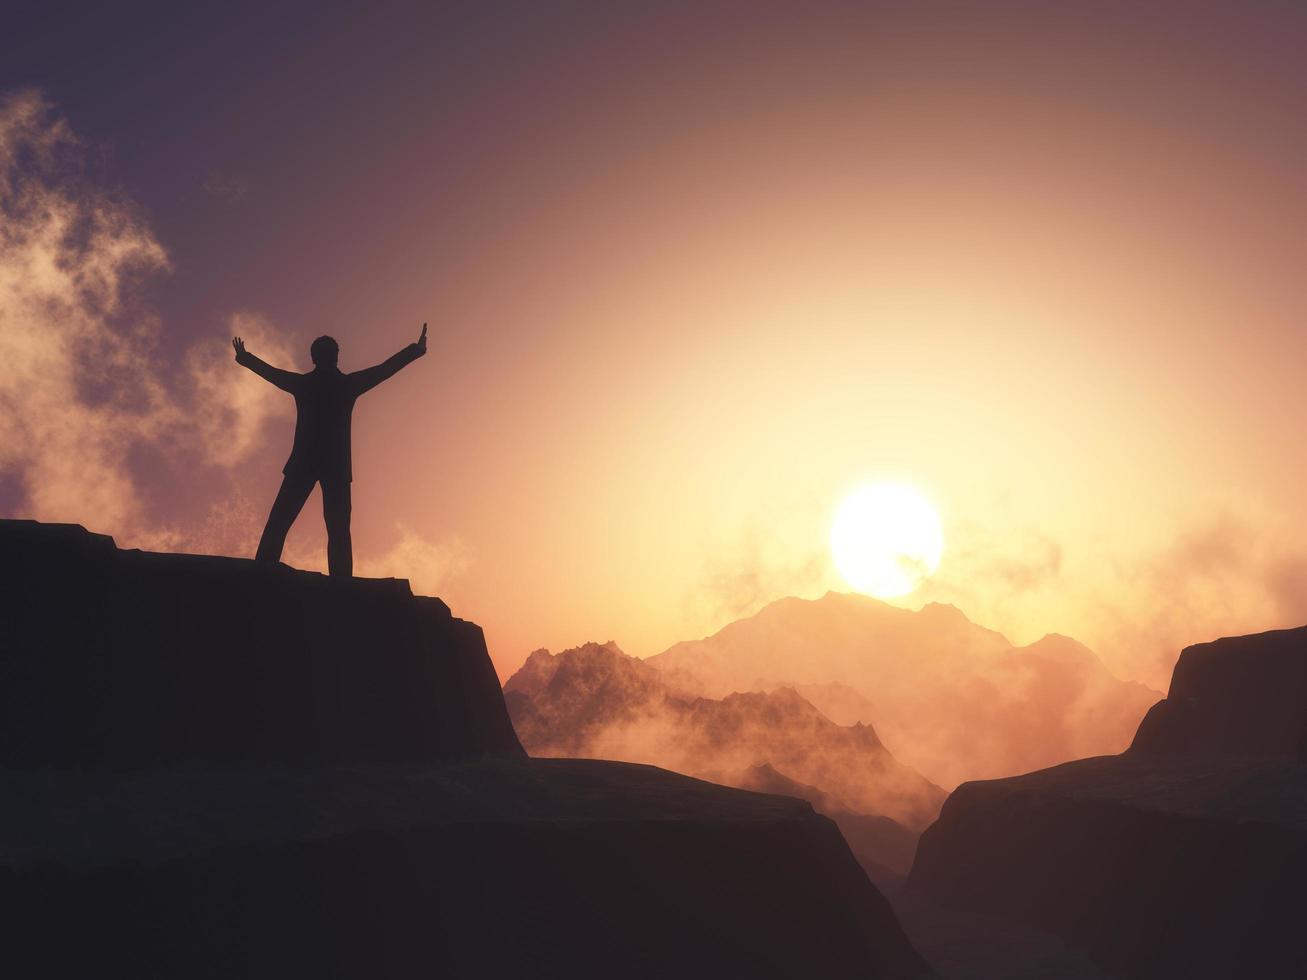 Männliche Figur 3d mit erhobenen Armen stand auf Berg gegen Sonnenuntergangshimmel foto